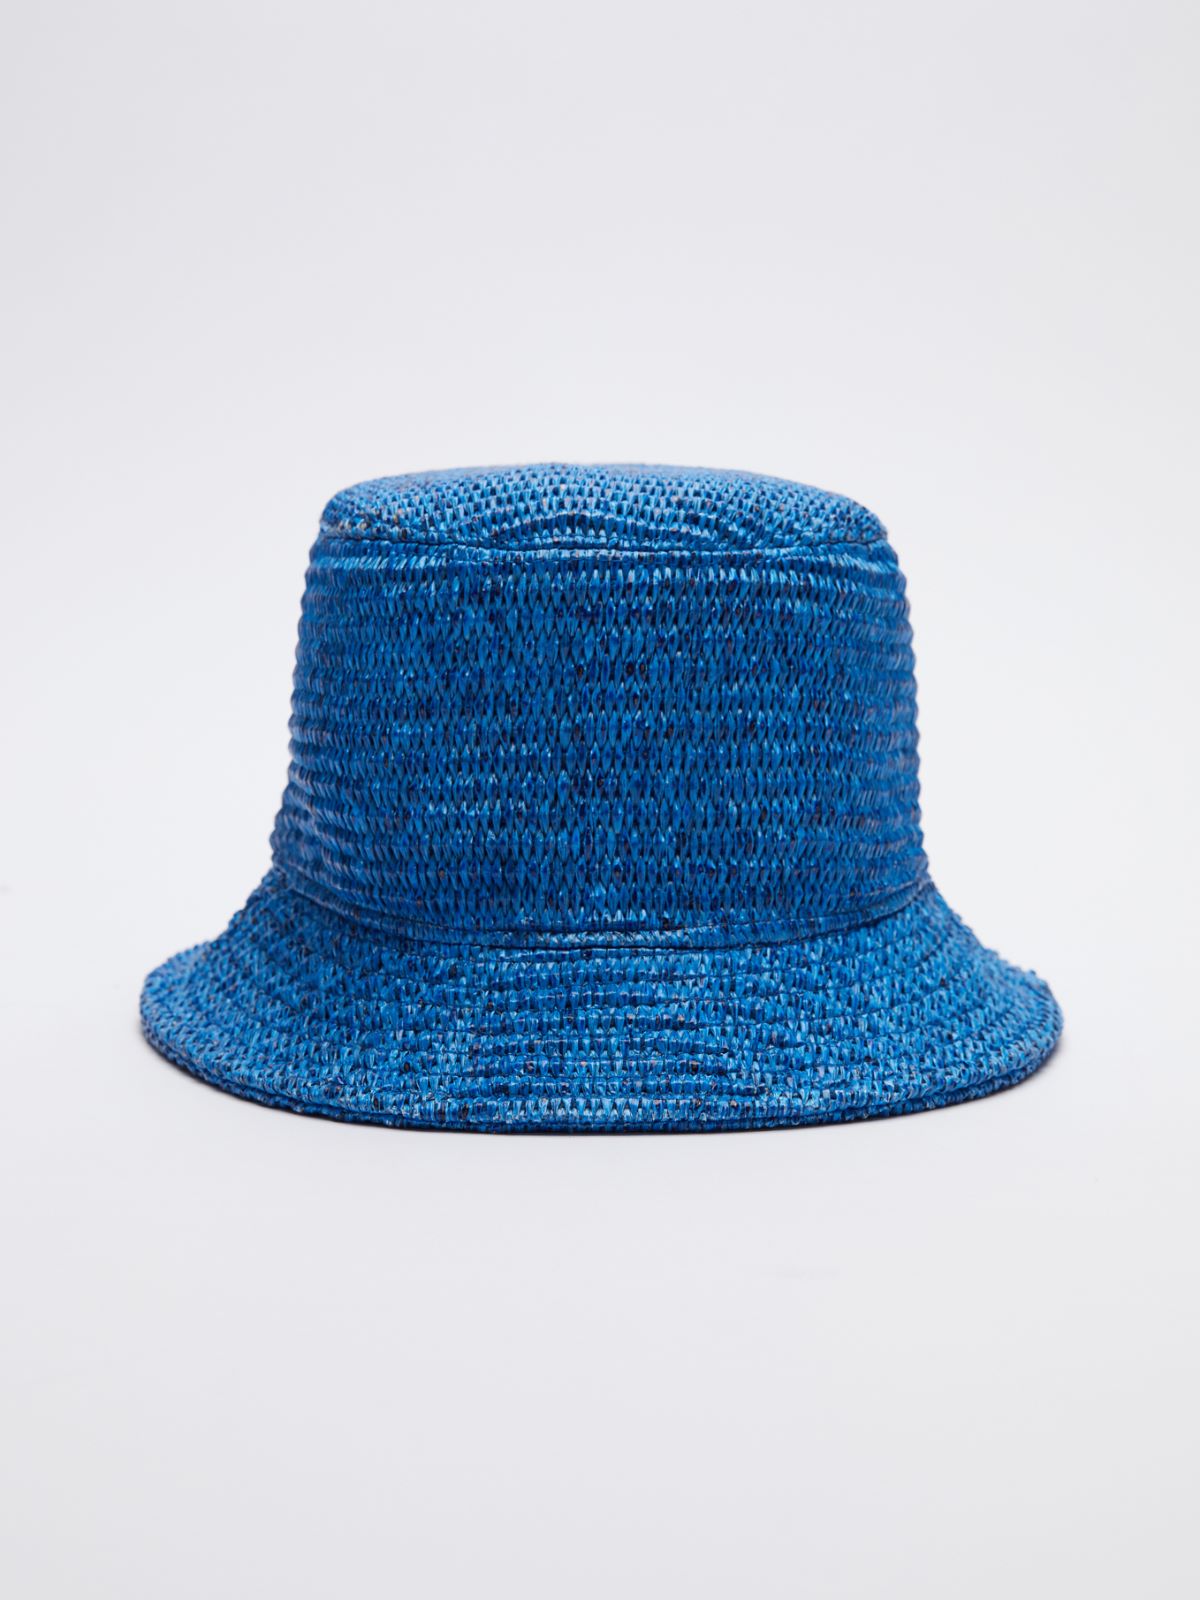 Cotton cloche hat - CORNFLOWER BLUE - Weekend Max Mara